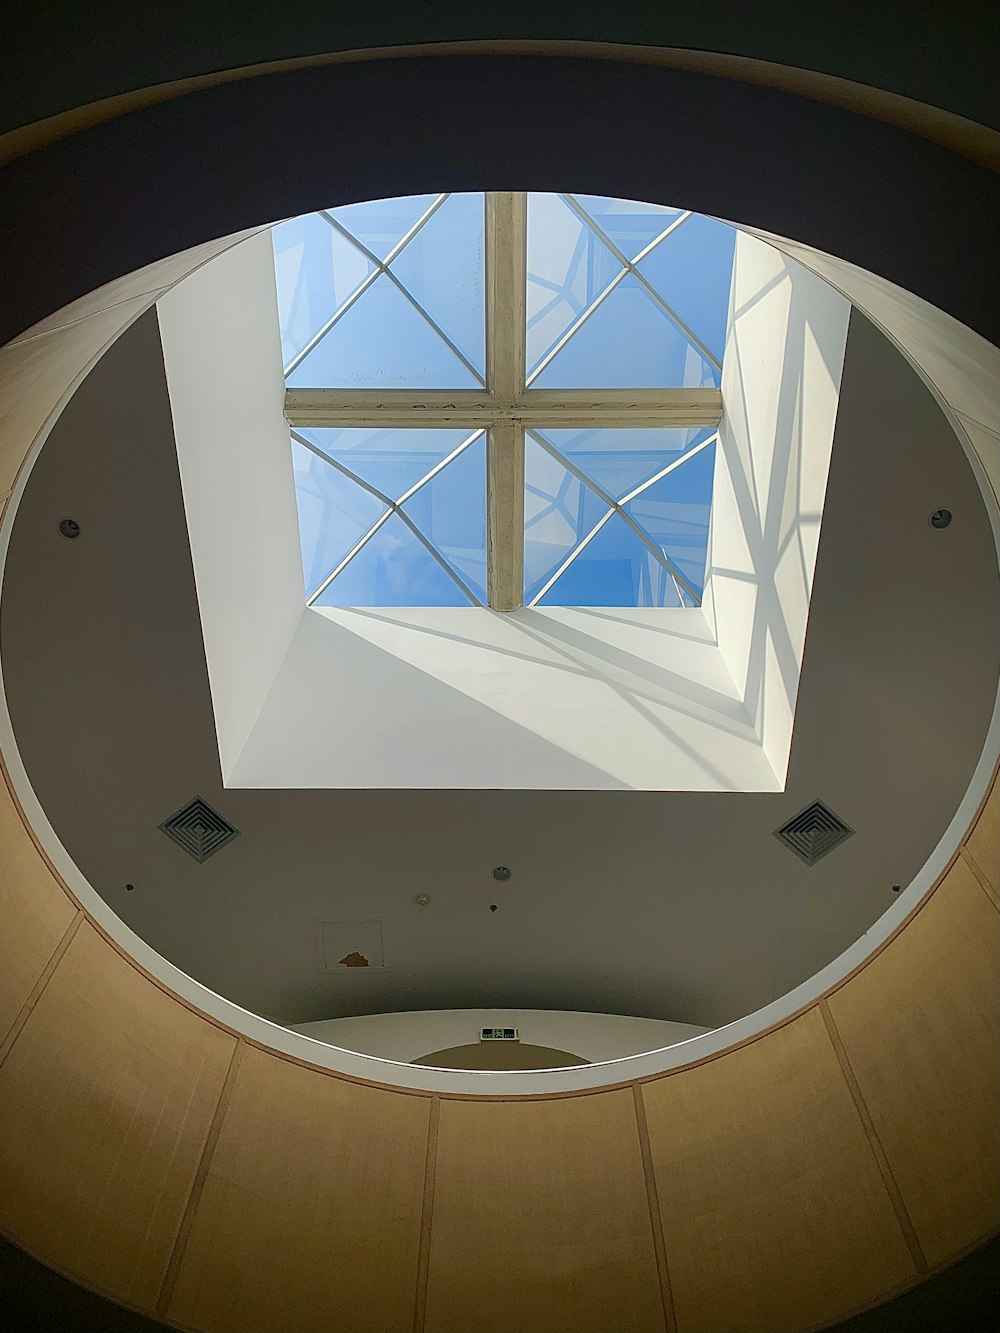 Vue d’une fenêtre ronde dans un bâtiment